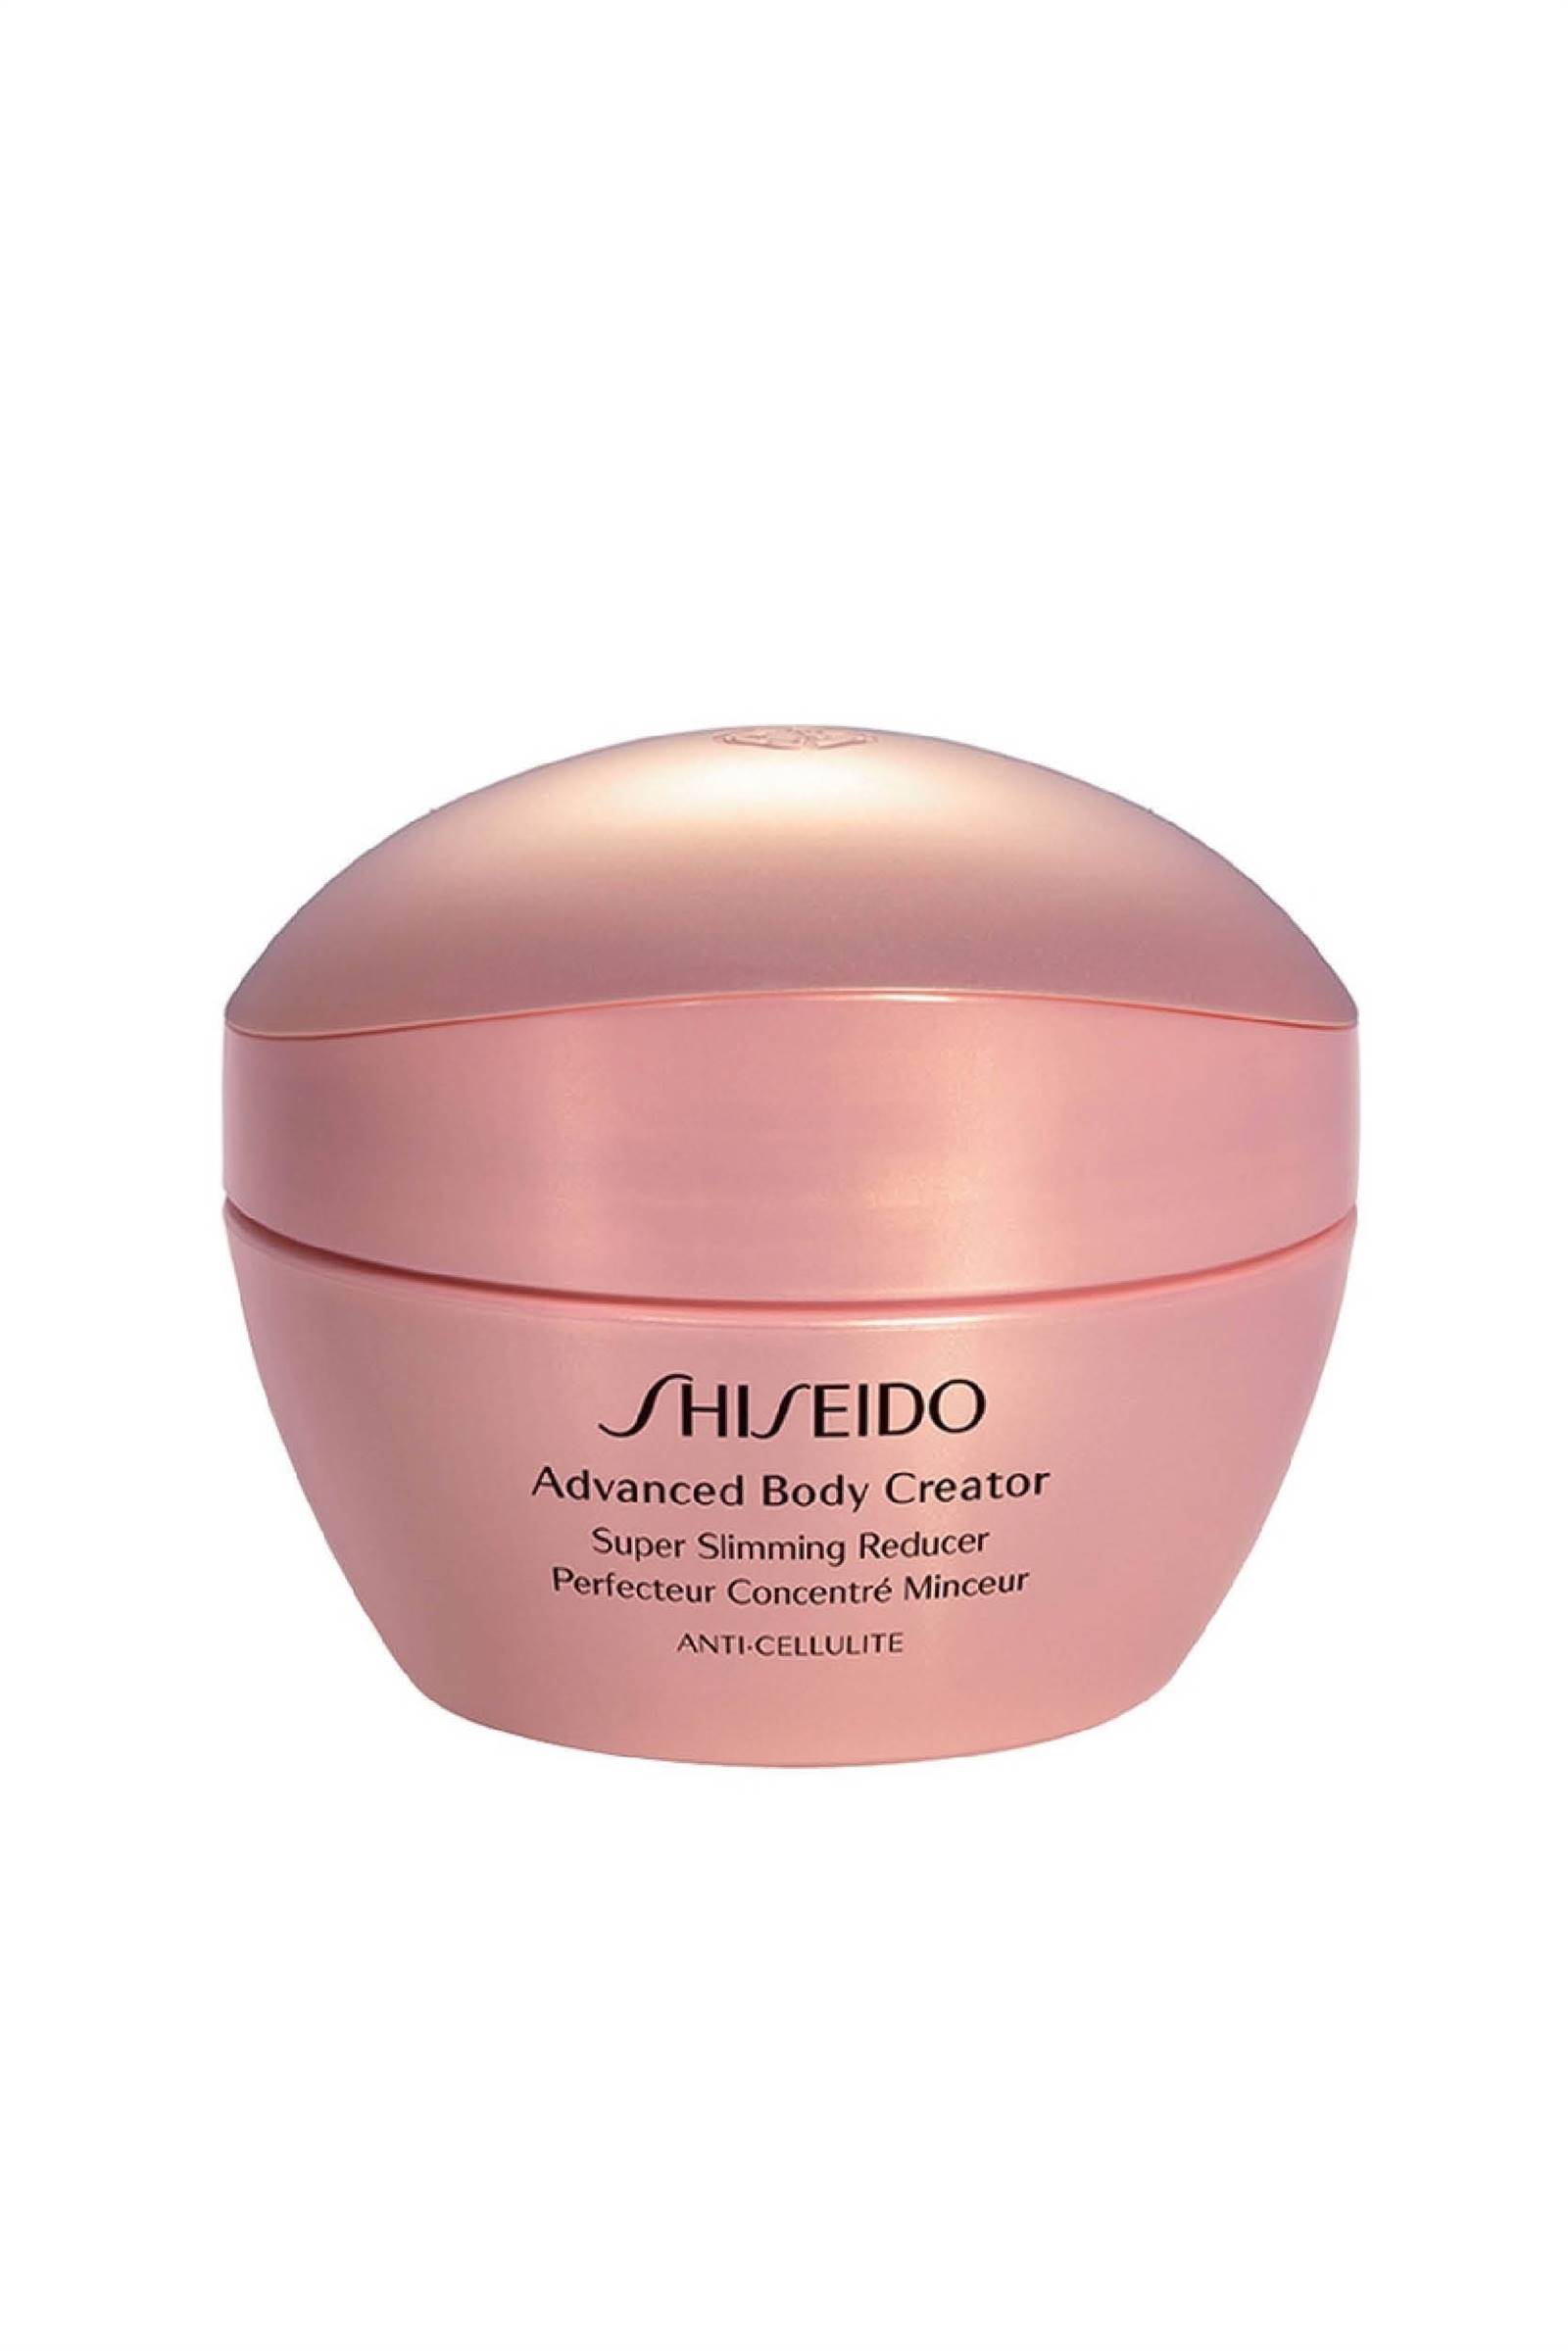 shiseido crema reductora anticelulitis. Gel crema reafirmante anti celulitis de Shiseido